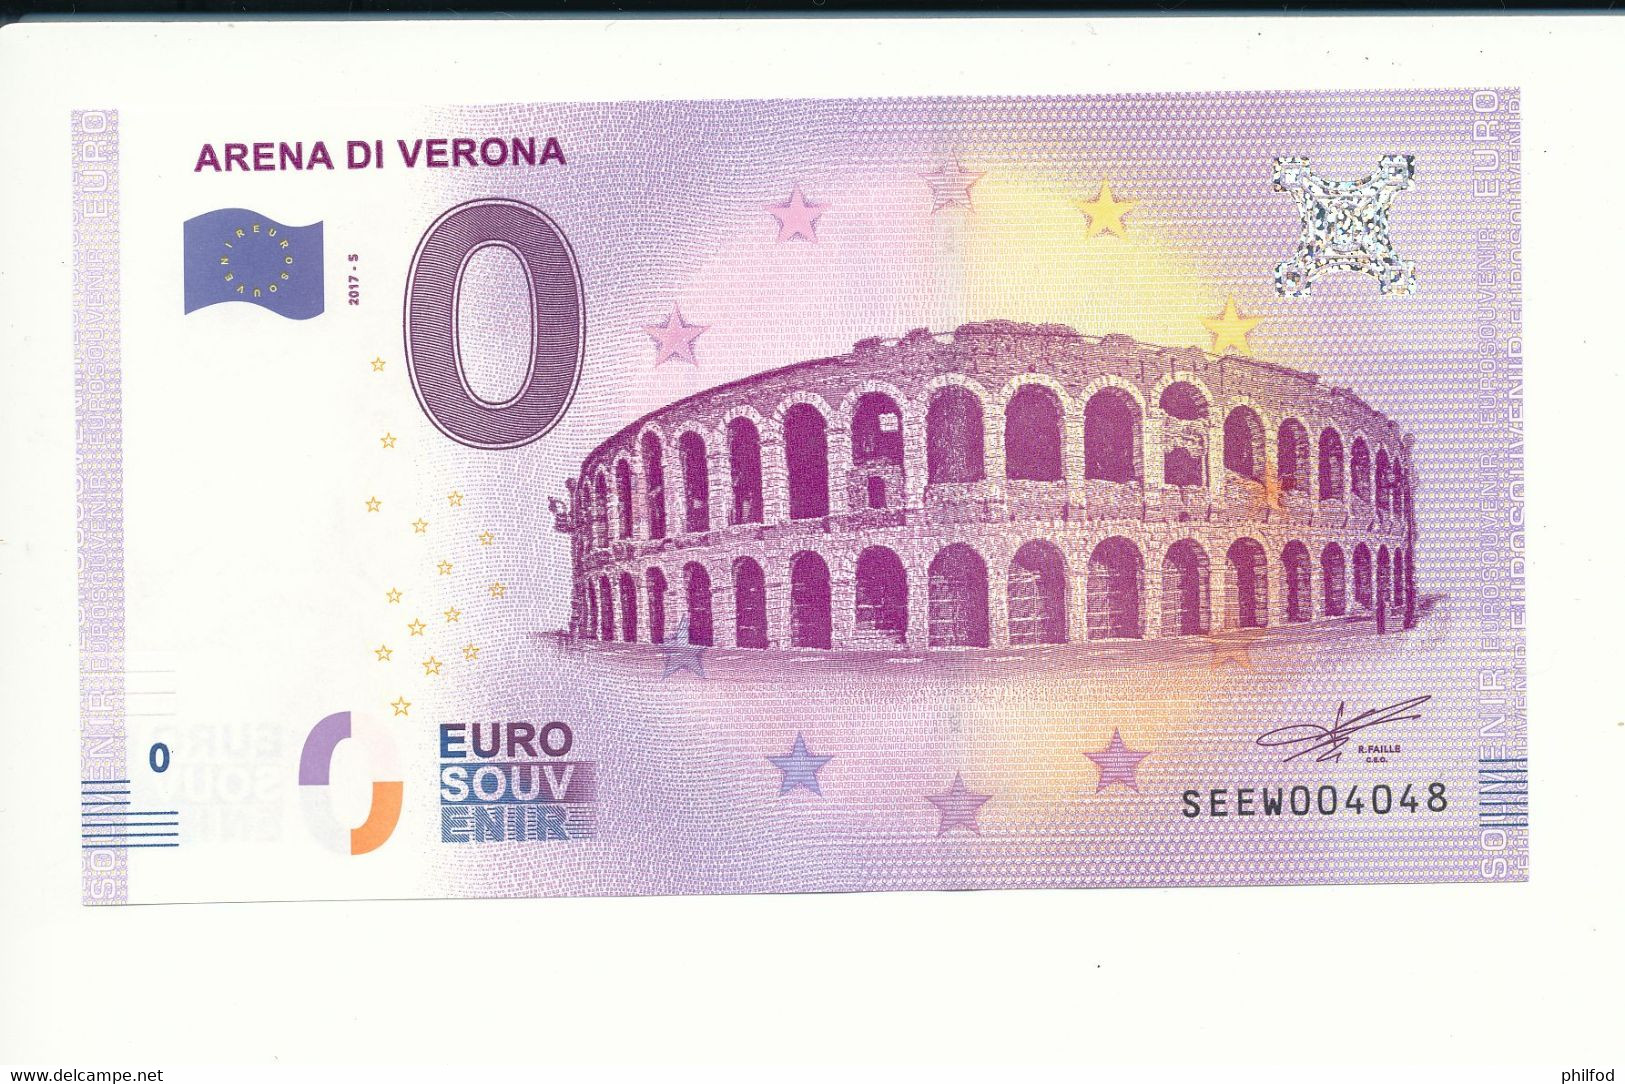 Billet Souvenir - 0 Euro - SEEW - 2017-5 -  ARENA DI VERONA - N° 4048 - Billet épuisé - Vrac - Billets